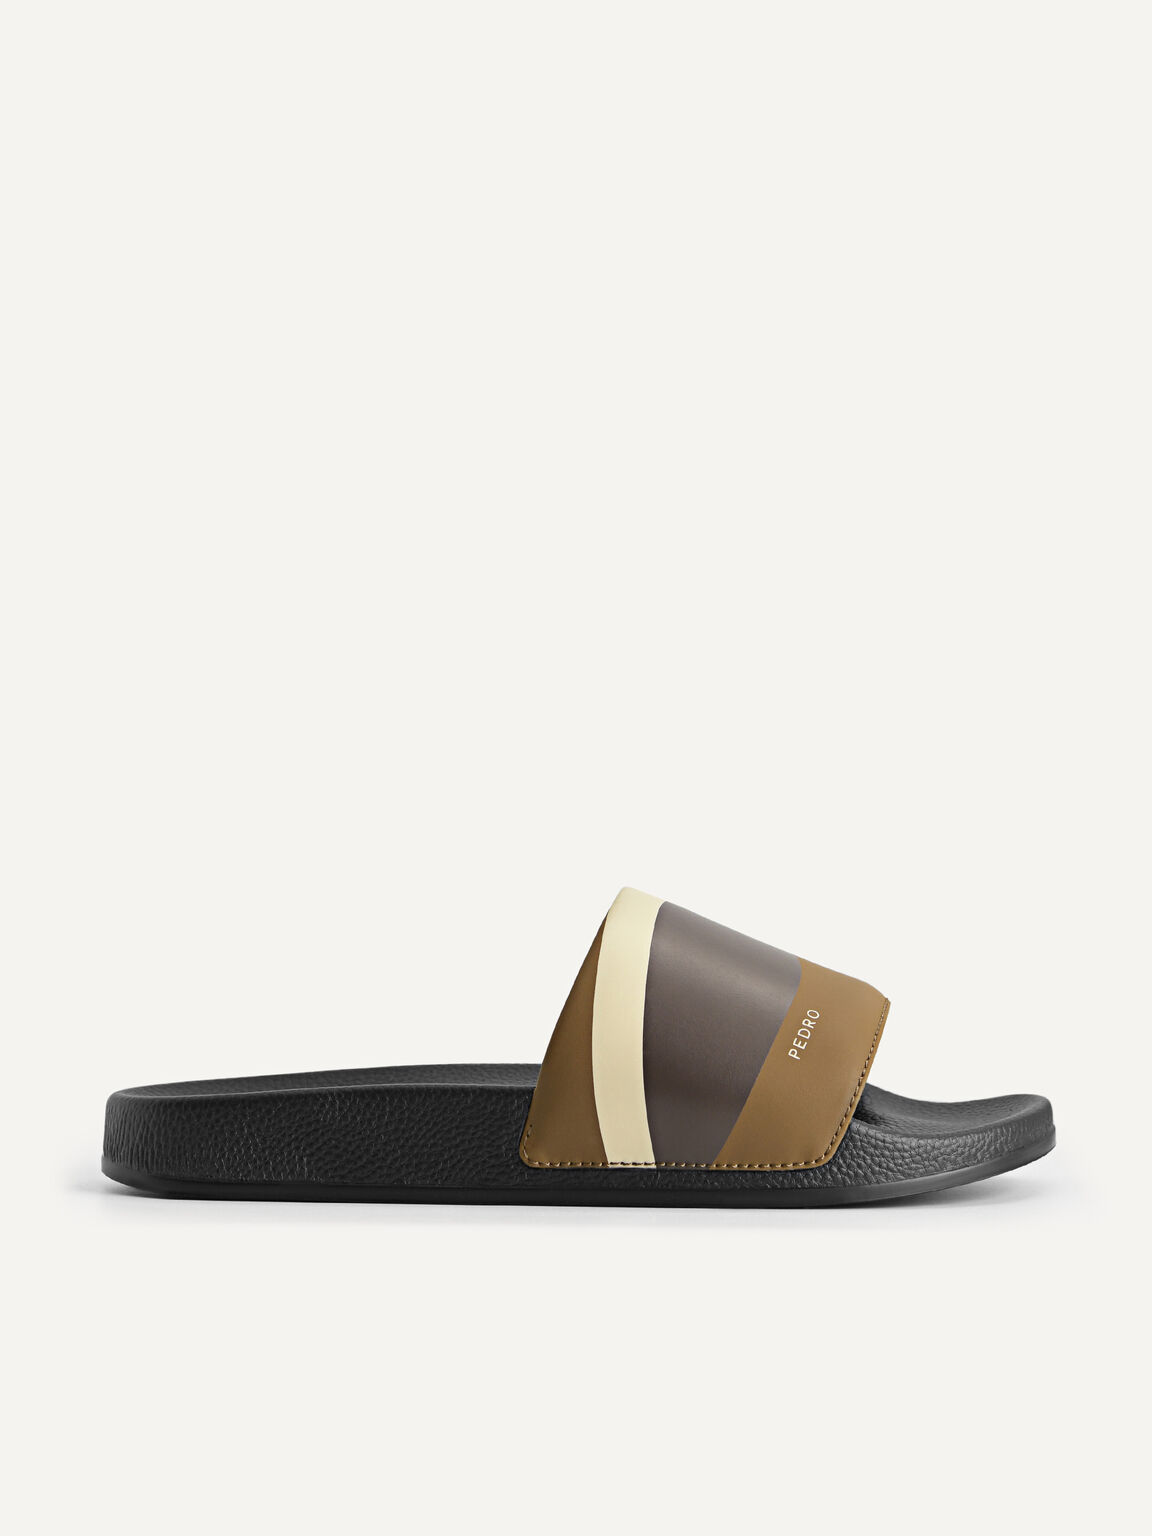 Printed Slide Sandals, Olive, hi-res